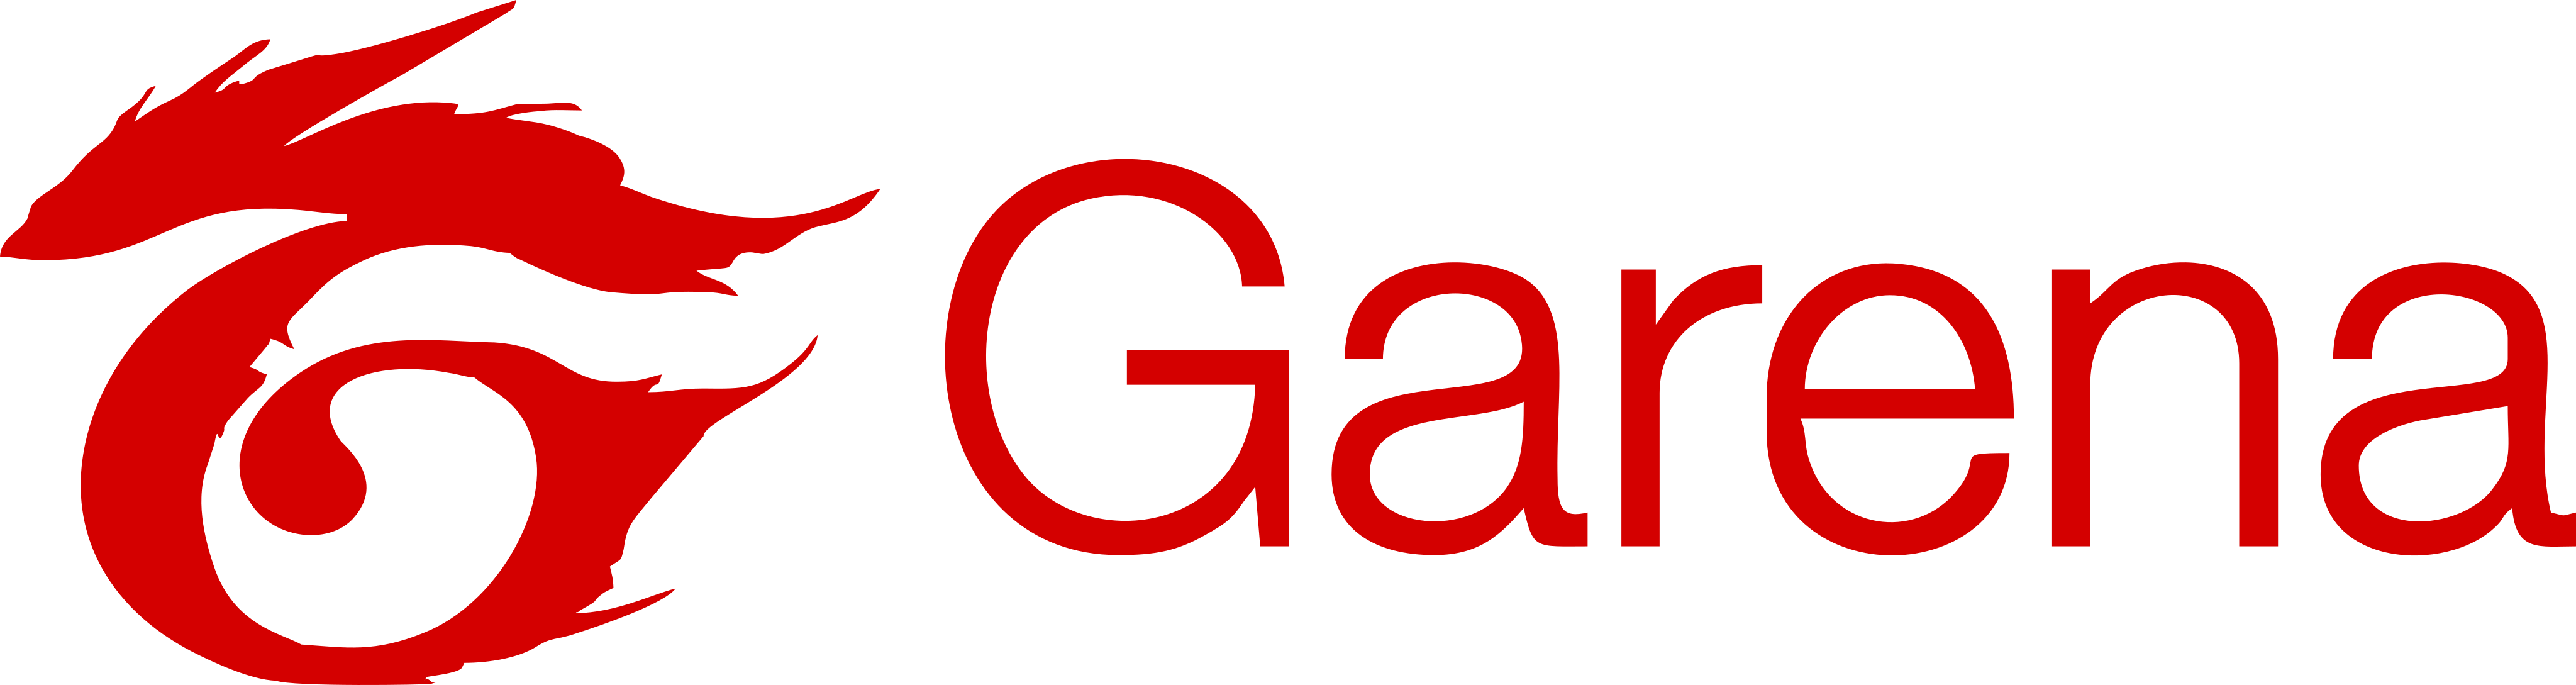 Download Logo Garena Png - KibrisPDR